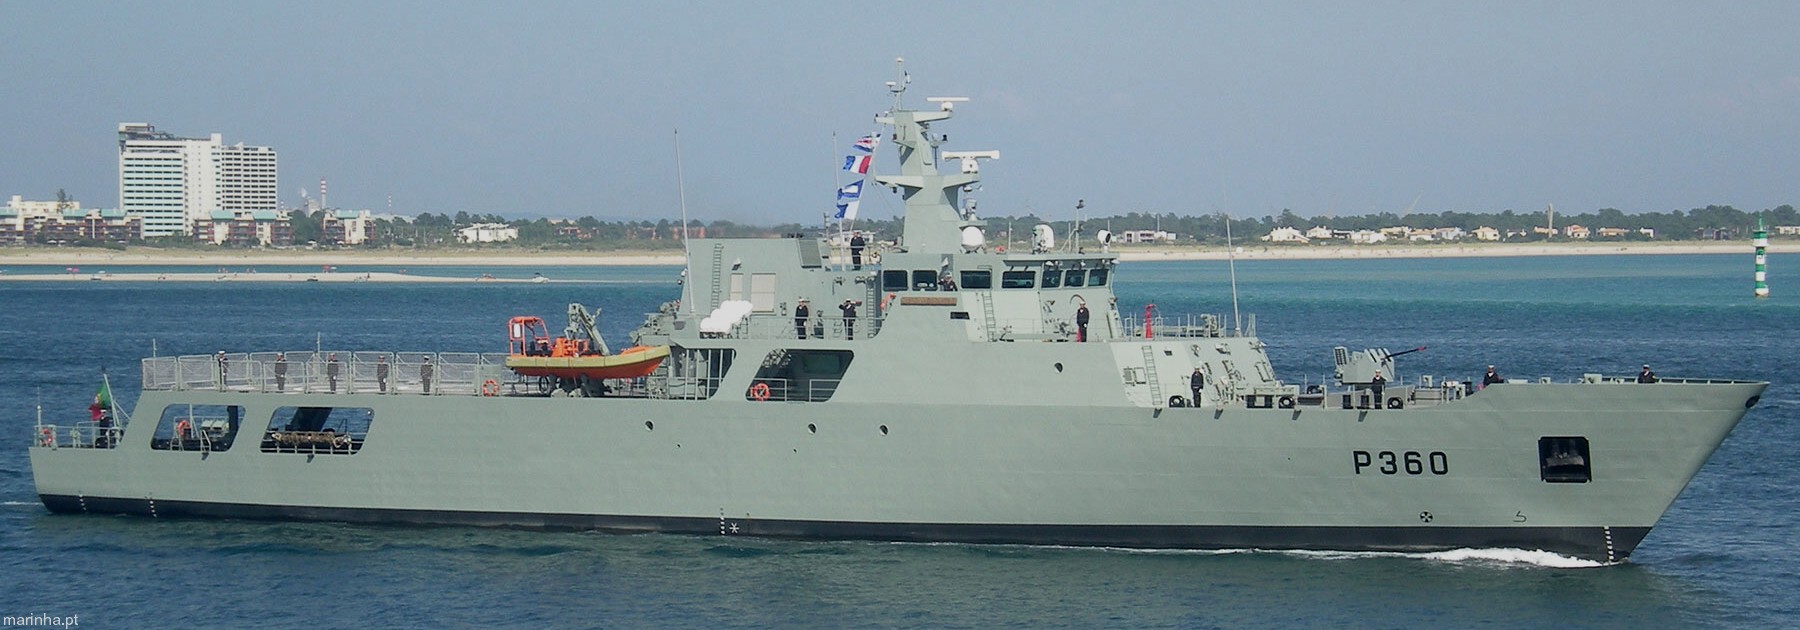 p-360 nrp viana do castelo class offshore patrol vessel opv portuguese navy marinha npo2000 04